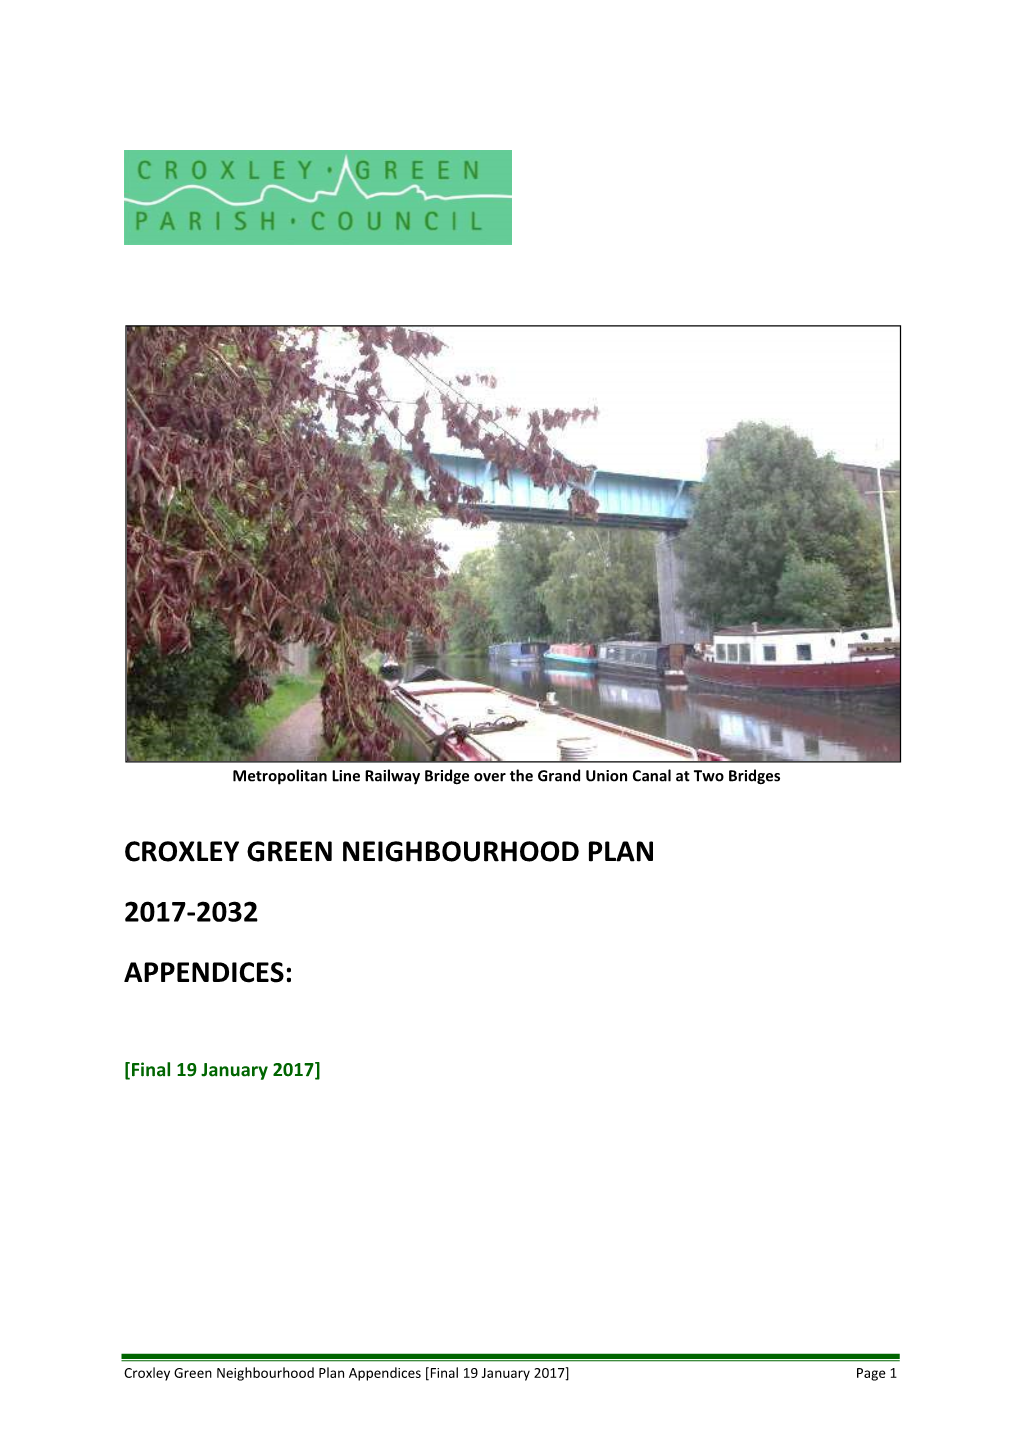 Croxley Green Neighbourhood Plan 2017-2032 Appendices (Pdf)